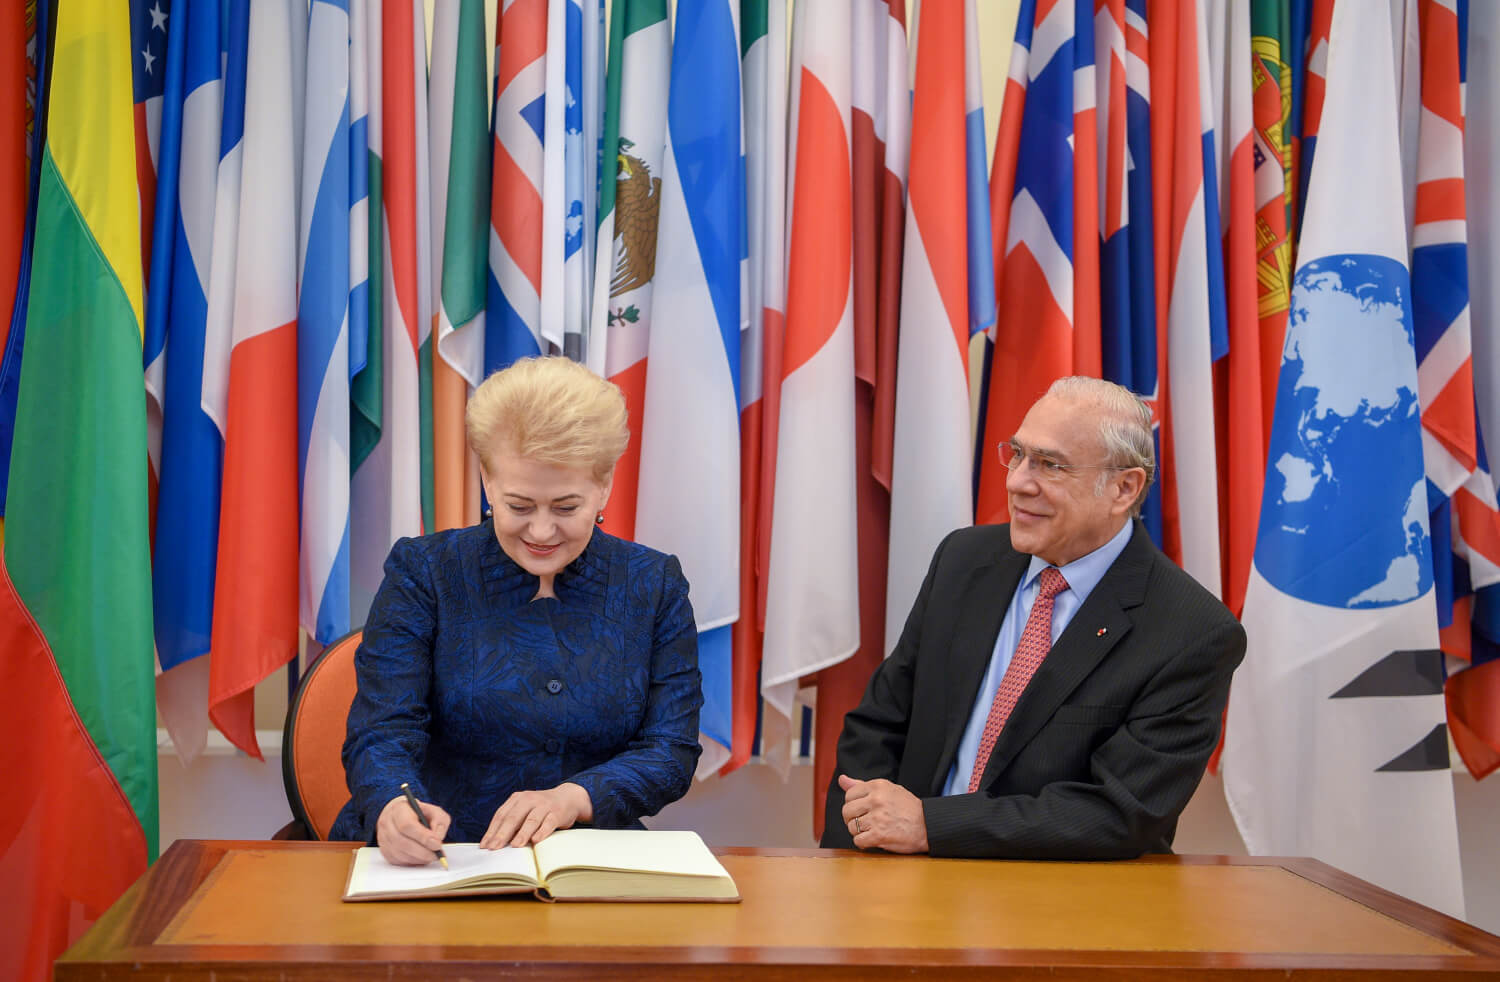 Derybas dėl narystės EBPO Lietuva pradėjo prieš trejus metus ir įvykdė visas esmines reformas ekonomikos augimui skatinti ir žmonių gerovei stiprinti.